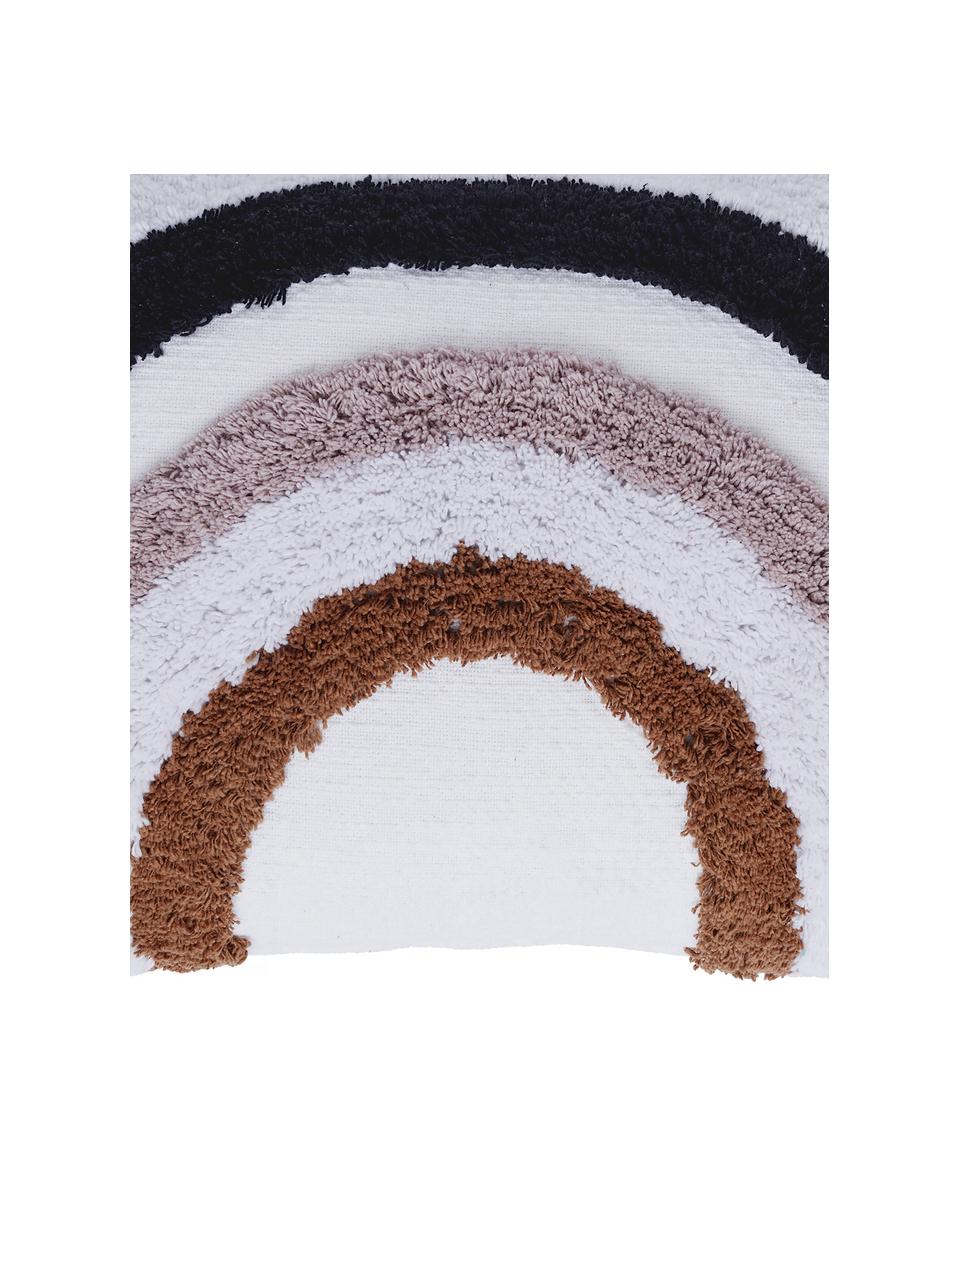 Zachte kussenhoes Arco met regenboogmotief, 100% katoen, Wit, oudroze, donkerblauw, bruin, 40 x 60 cm